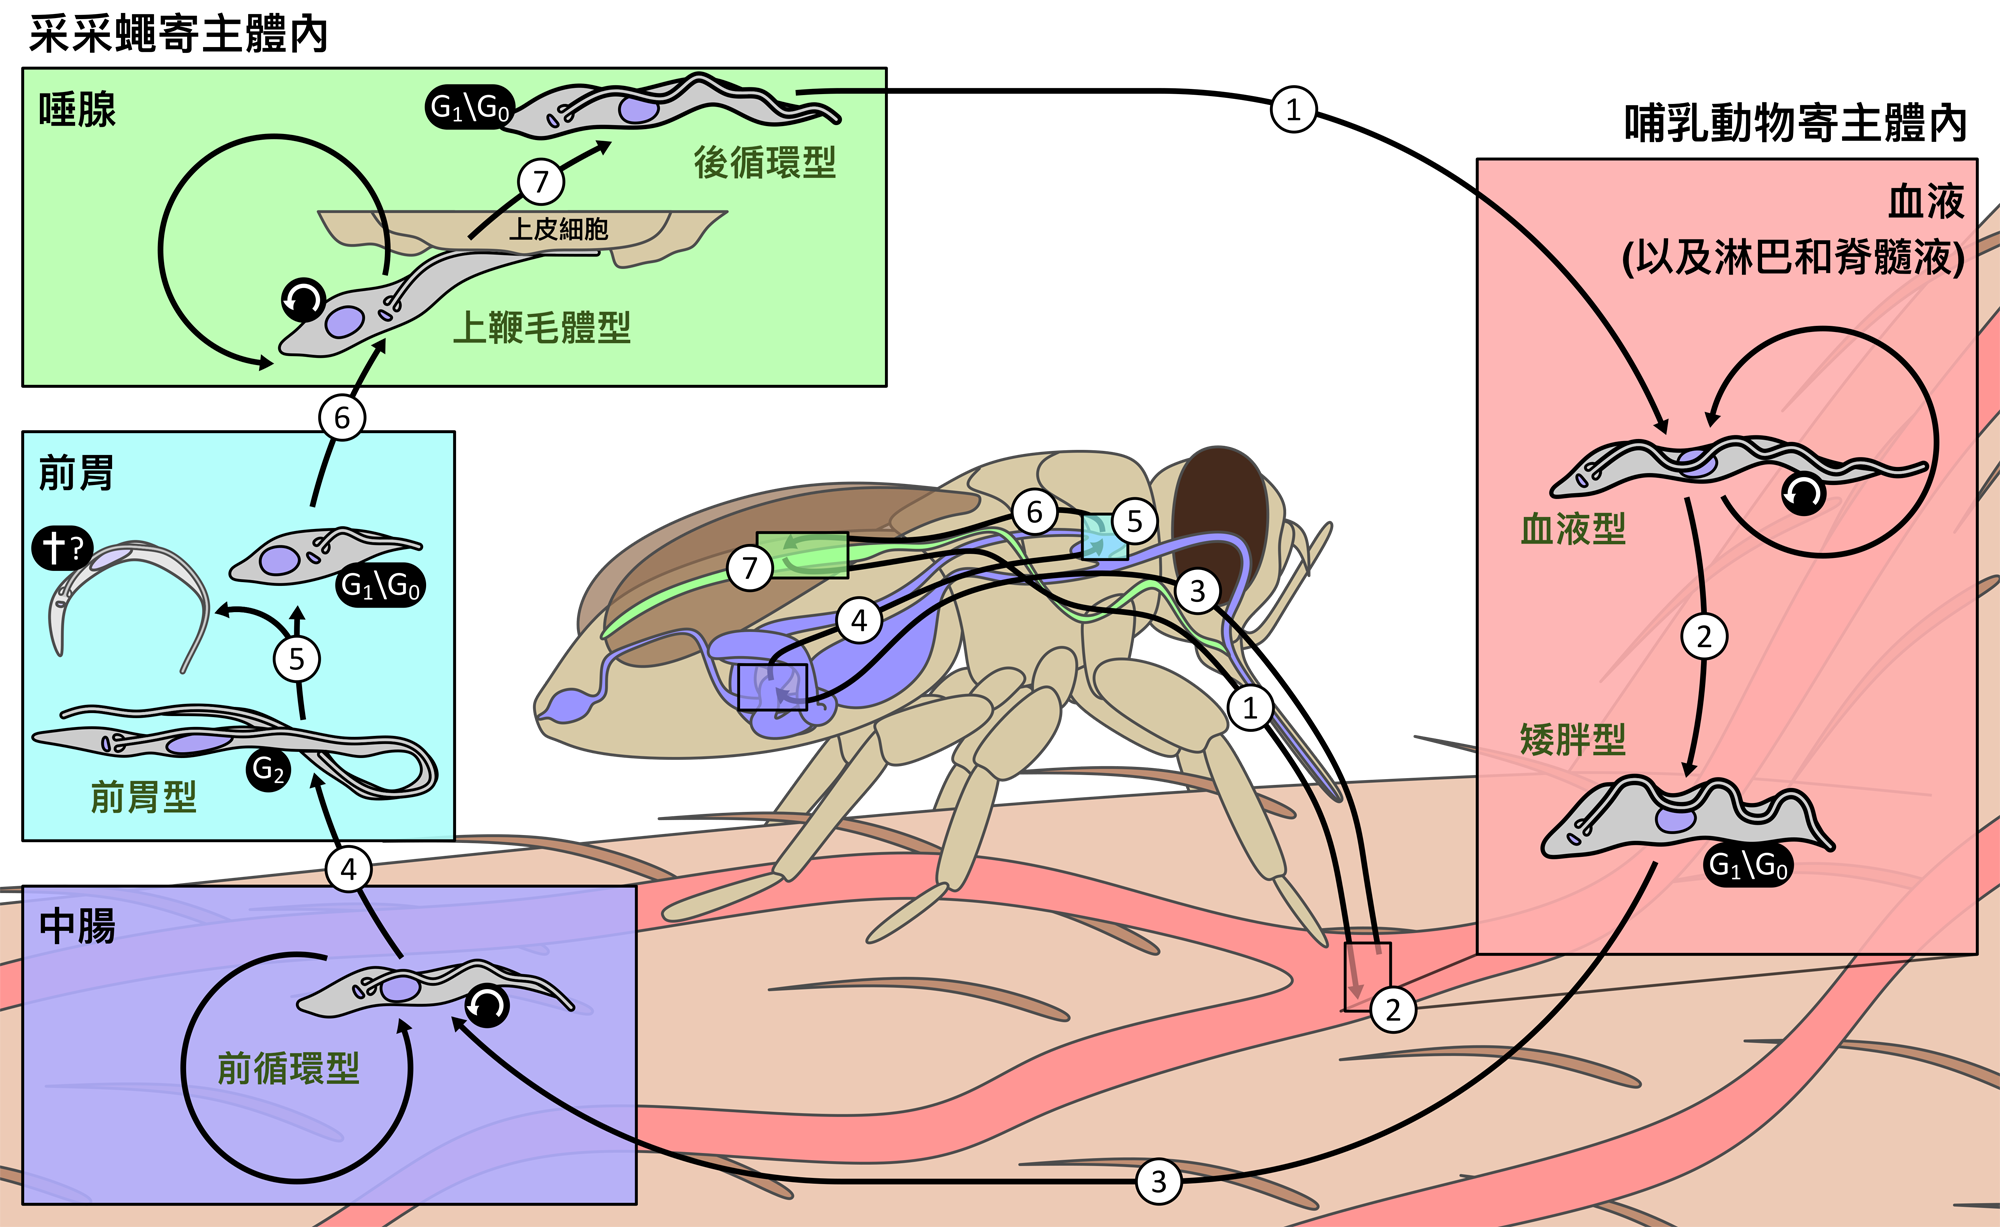 圖二：錐蟲在采采蠅及哺乳動物寄主身上的生活史。左右邊各色的框格分別對應采采蠅及哺乳動物體內各器官同色部位，匡格內為錐蟲在該部位時所表現的生活史階段。圖片提供：Richard Wheeler. 